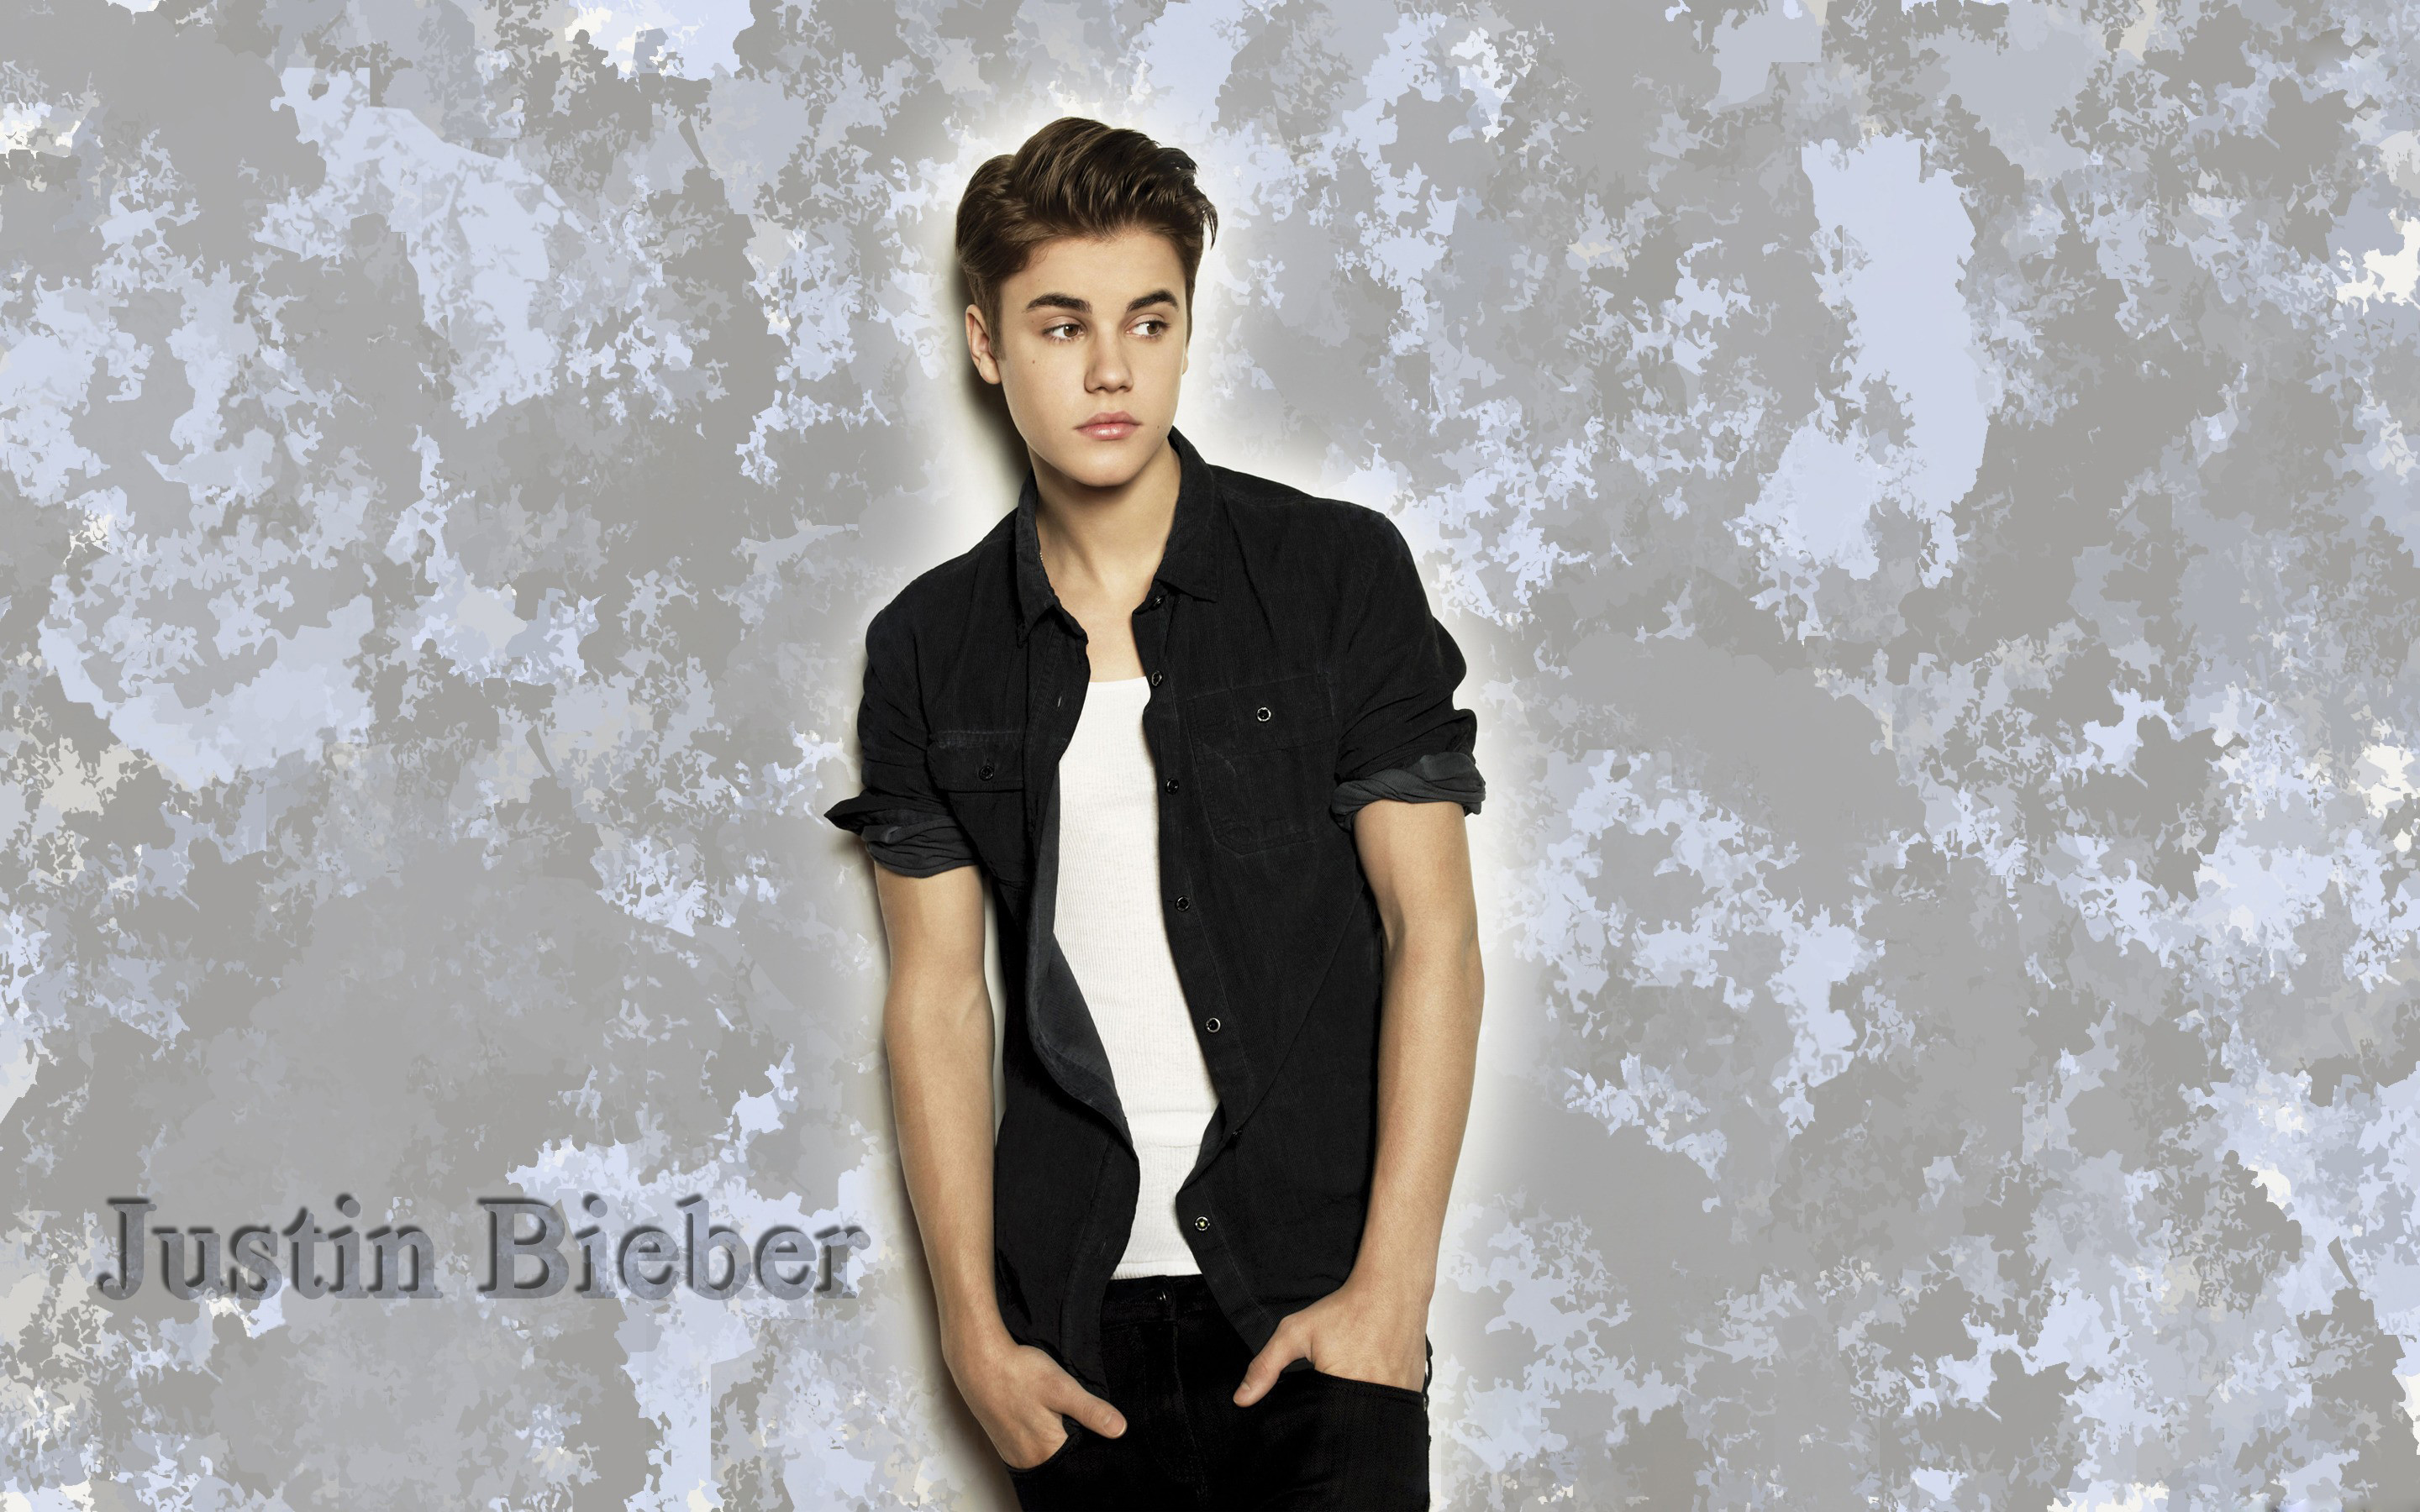 2880x1800 Justin Bieber Wallpaper High Quality | PixelsTalk.Net